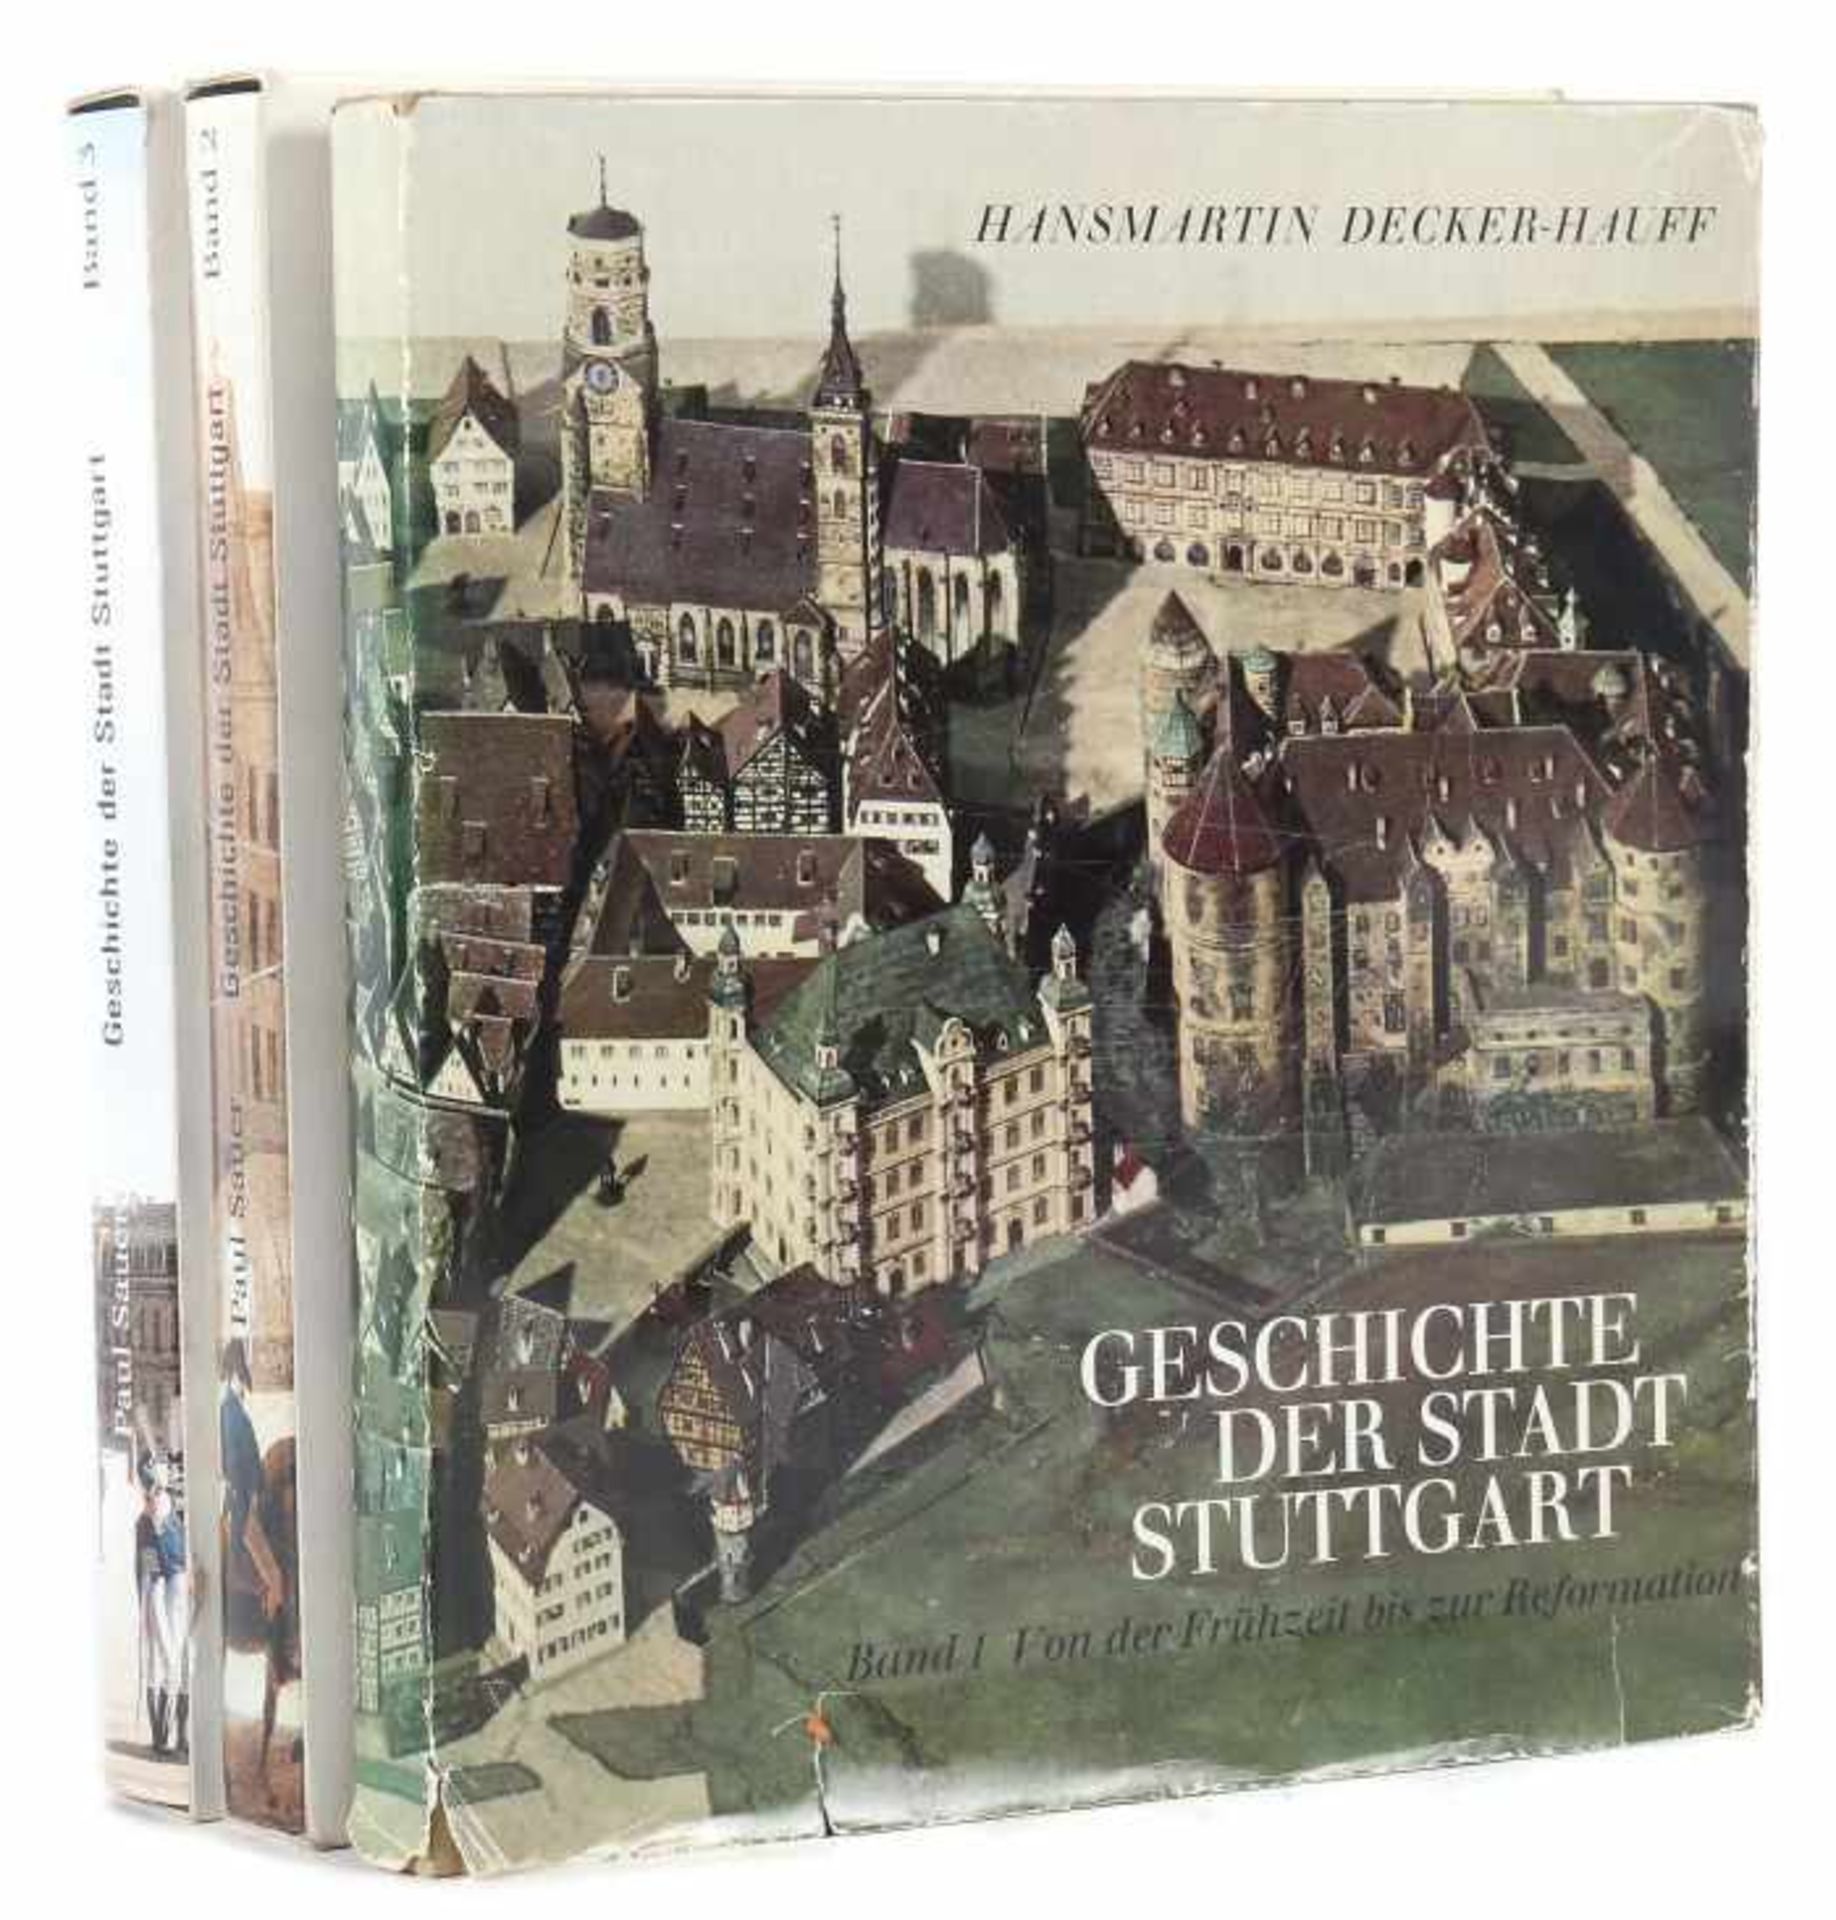 Decker-Hauff, Hansmartin und Sauer, PaulGeschichte der Stadt Stuttgart, Band 1-3, Stuttgart, 1966/